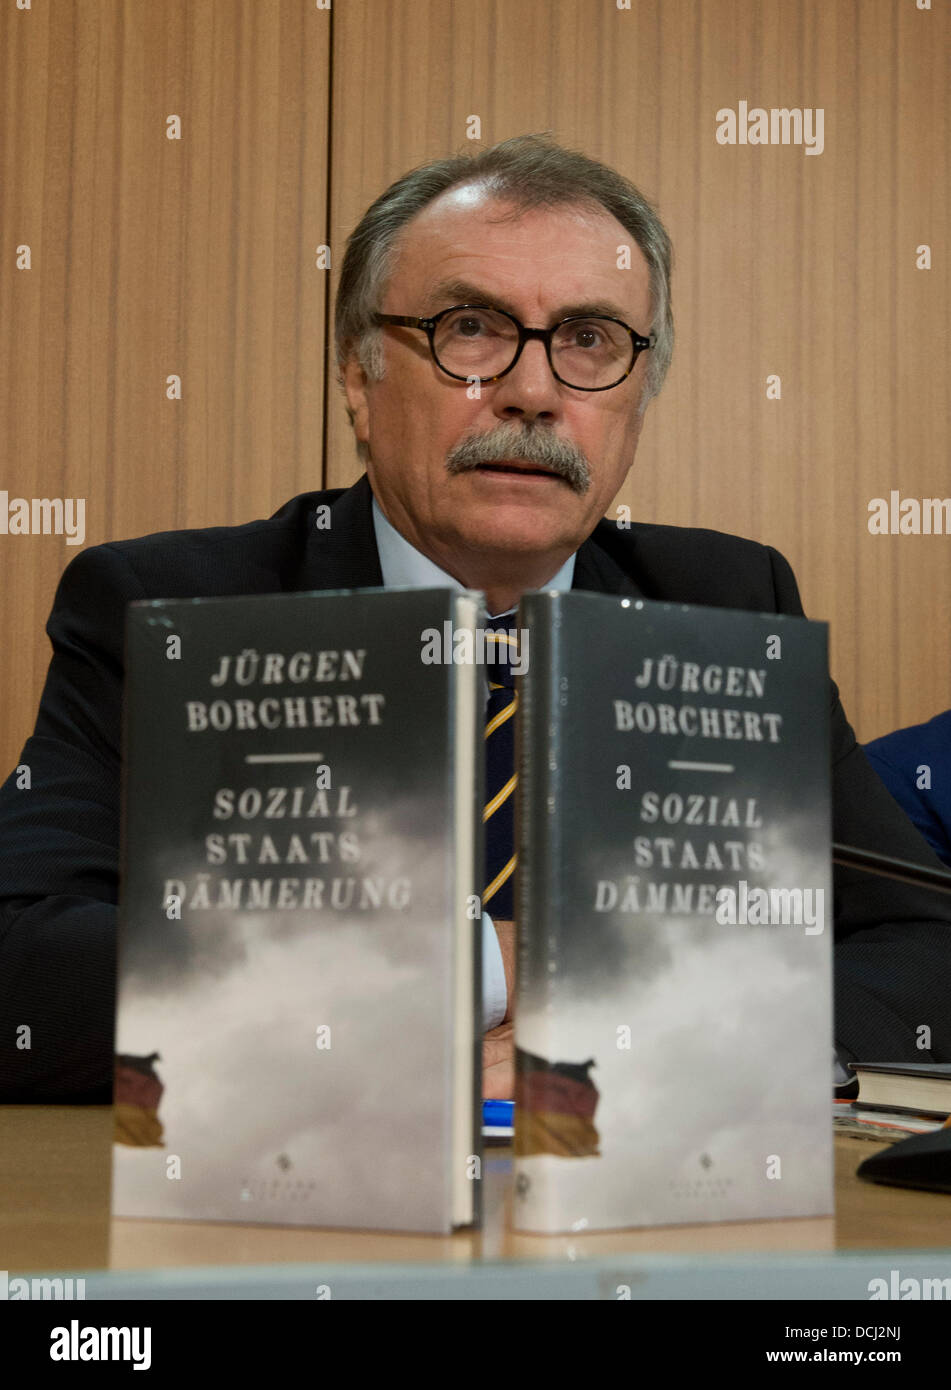 Escritor Juergen Borchert, habla durante la presentación de su libro 'Sozialstaats-Daemmerung' ('Social Estado Twilight') en Berlín, Alemania, el 19 de agosto de 2013. Foto: Rainer JENSEN Foto de stock